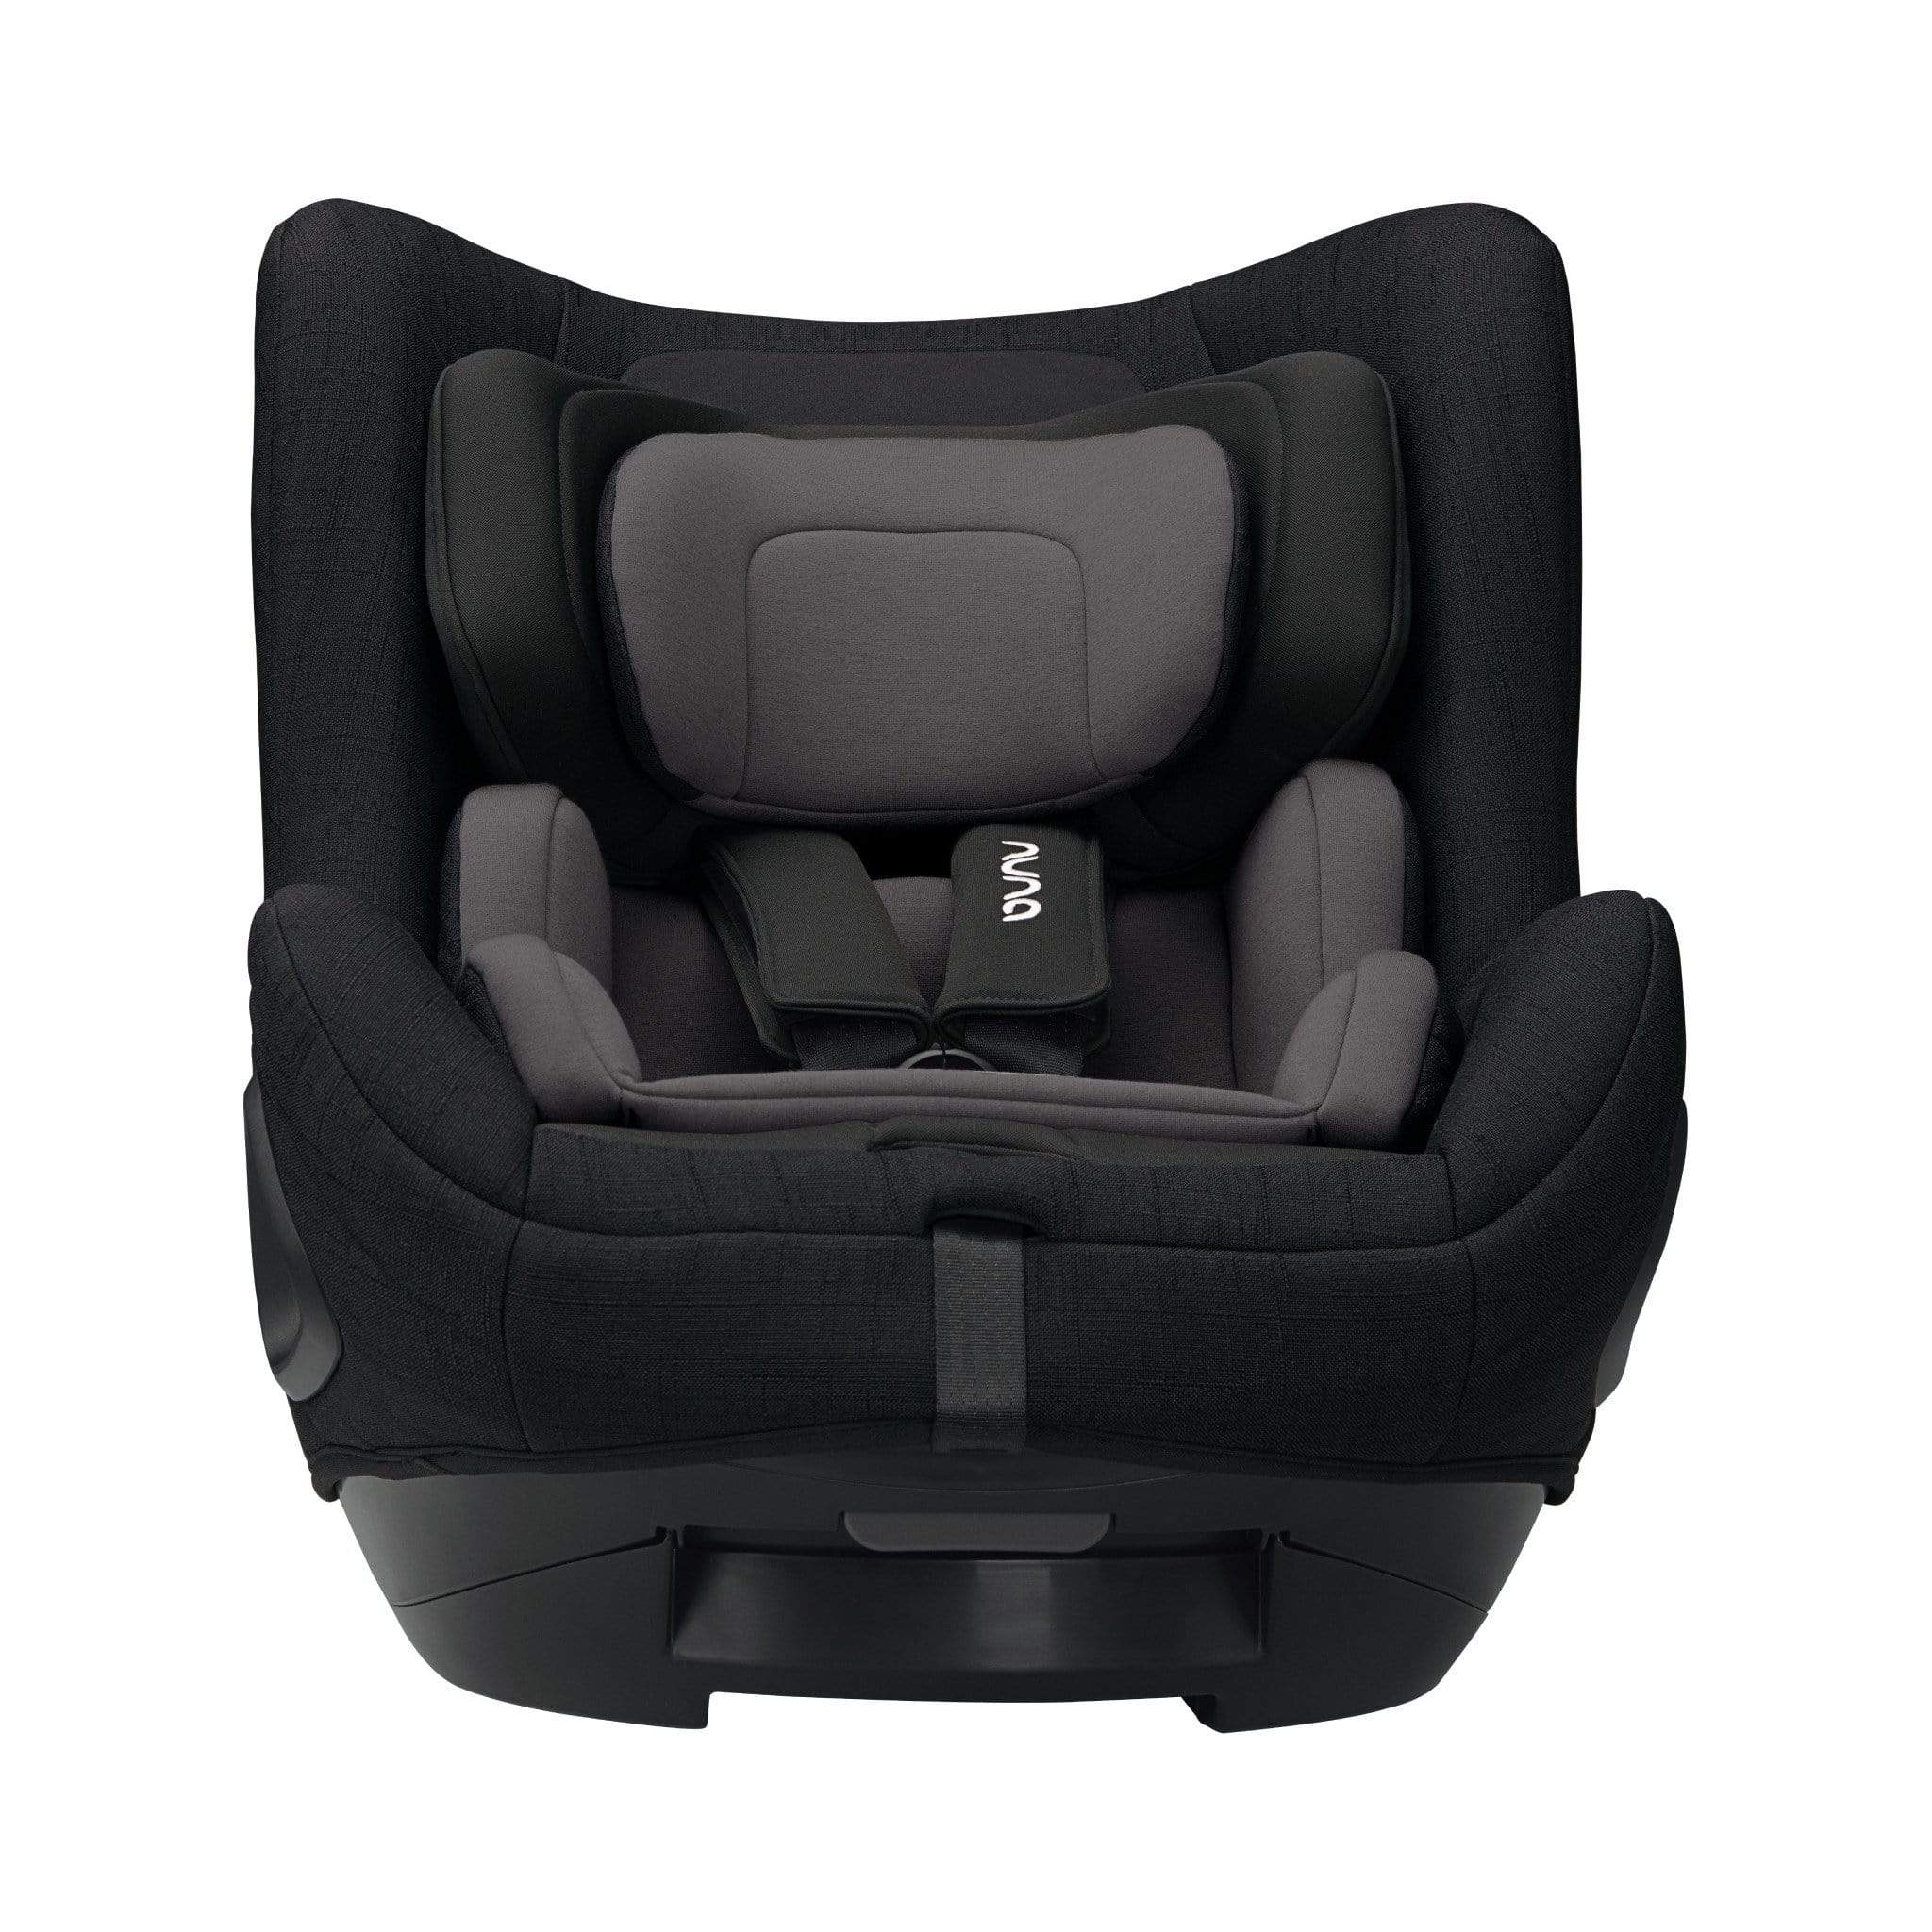 Nuna TODL Next & BASE Next Bundle Caviar Baby Car Seats 9468-CAV 8719743749689